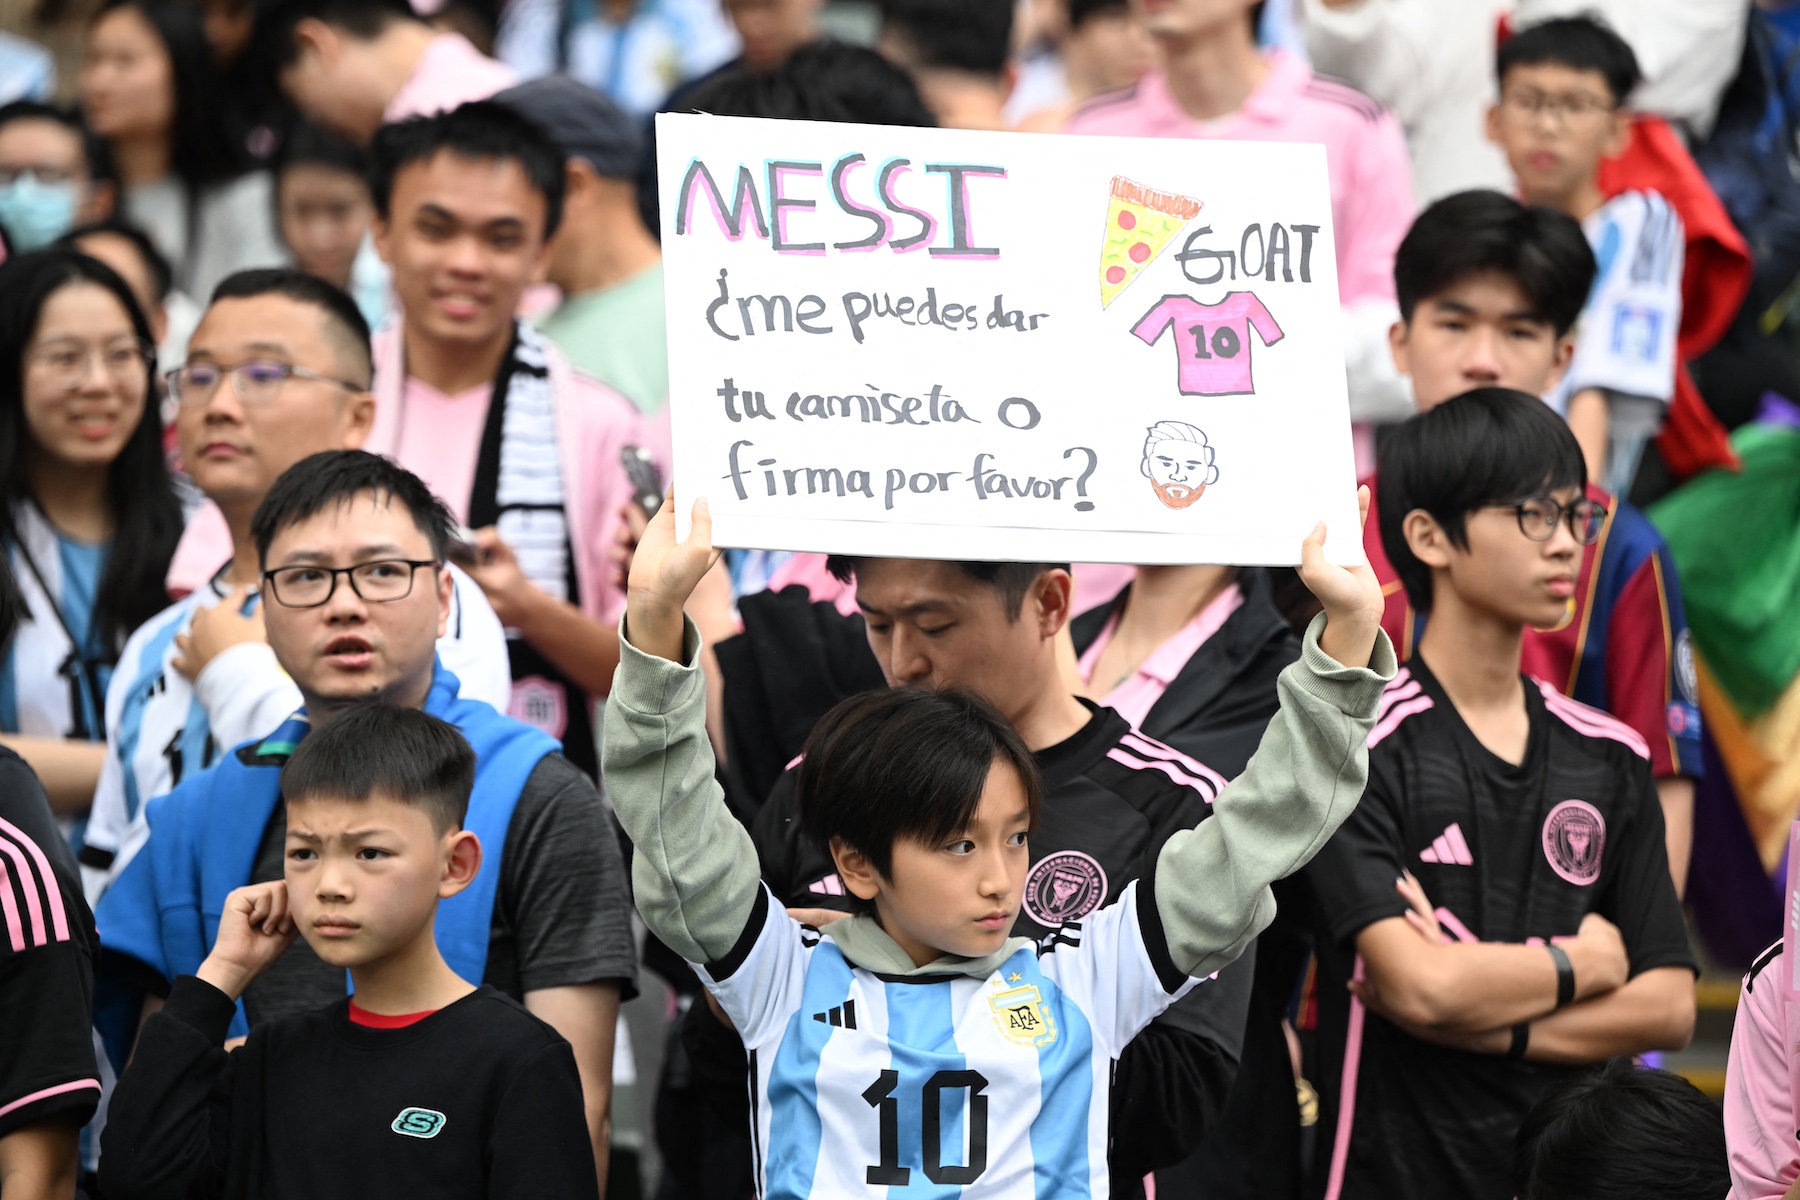 hong kong Lionel Messi friendly football match